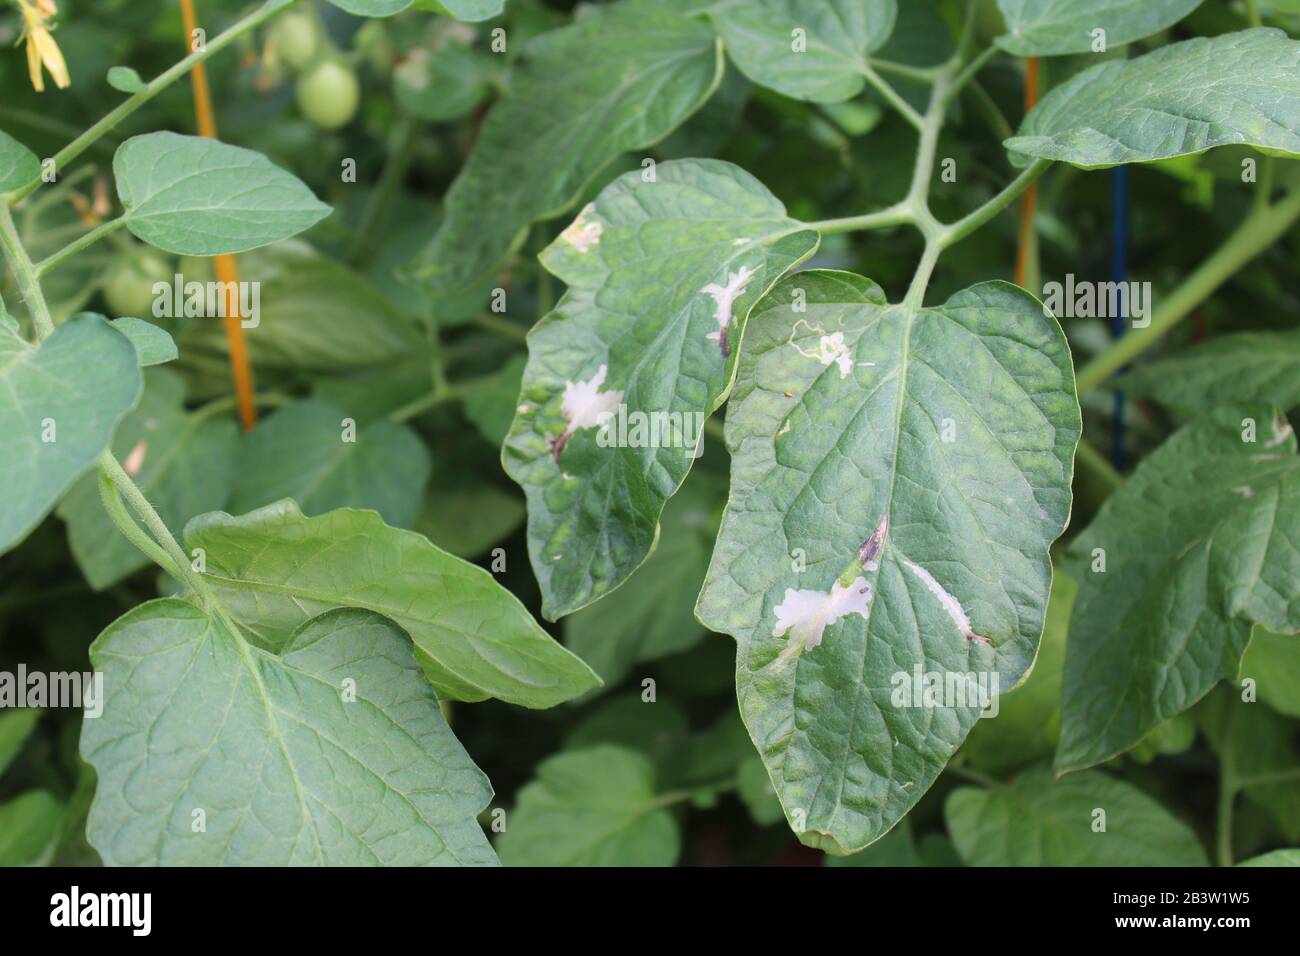 Infestation de feuilles de tomate. L'exploitation minière entre la surface supérieure et inférieure des feuilles par Tuta absoluta, entraînant des taches claires souvent remplies de frass. Banque D'Images